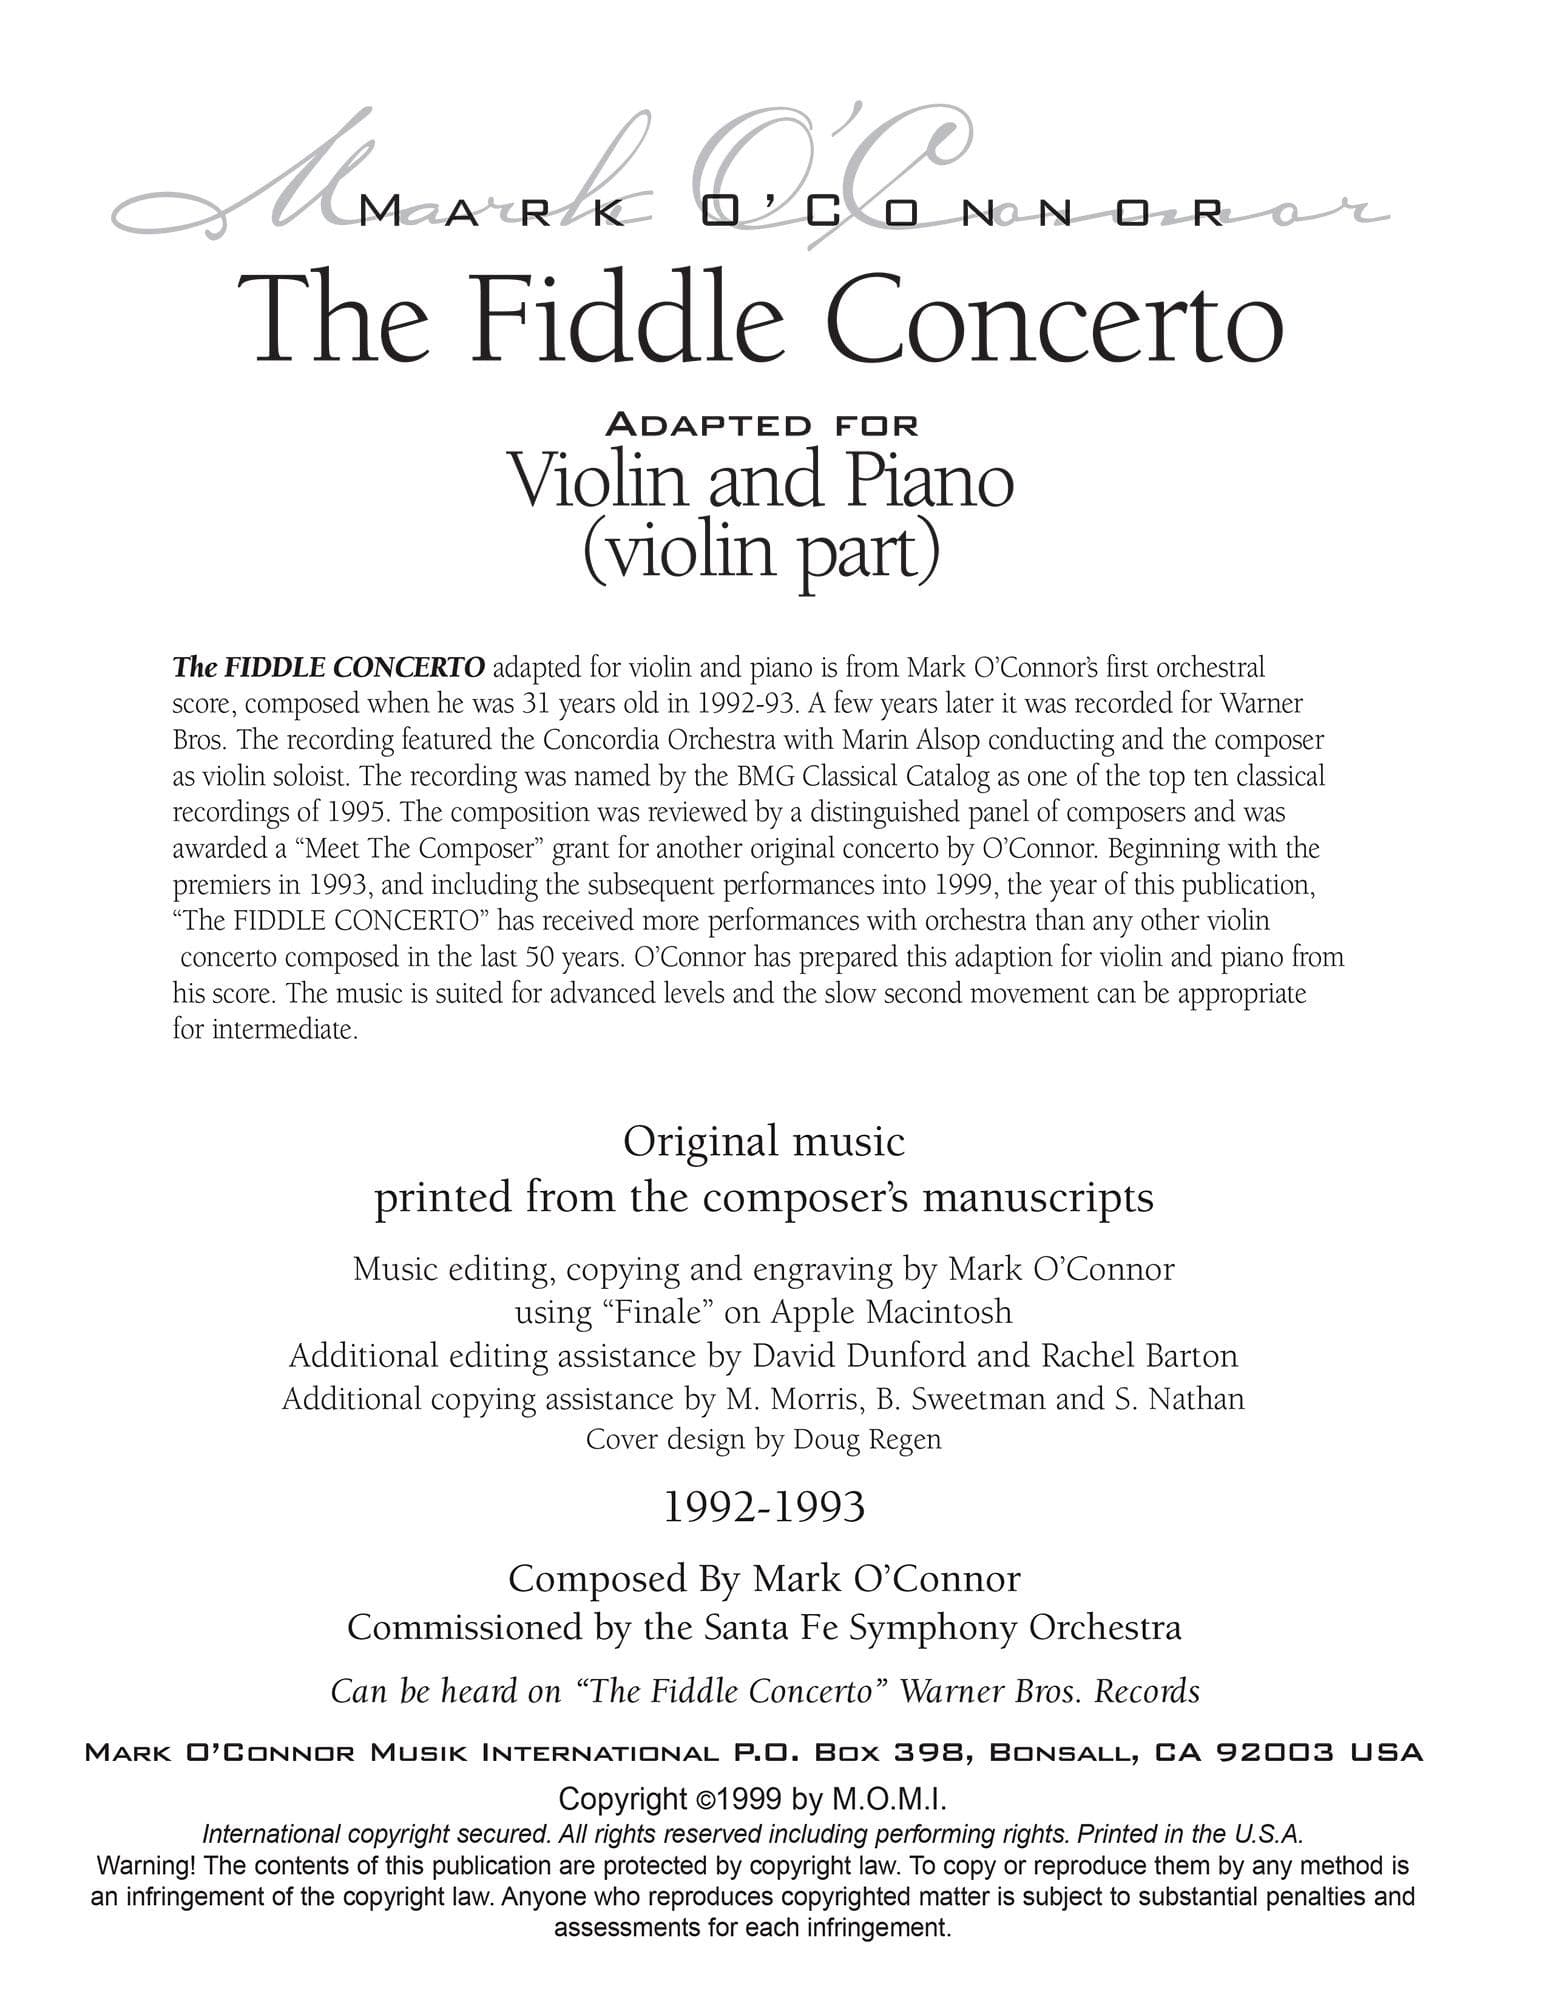 O'Connor, Mark - The FIDDLE CONCERTO for Violin and Piano - Violin - Digital Download